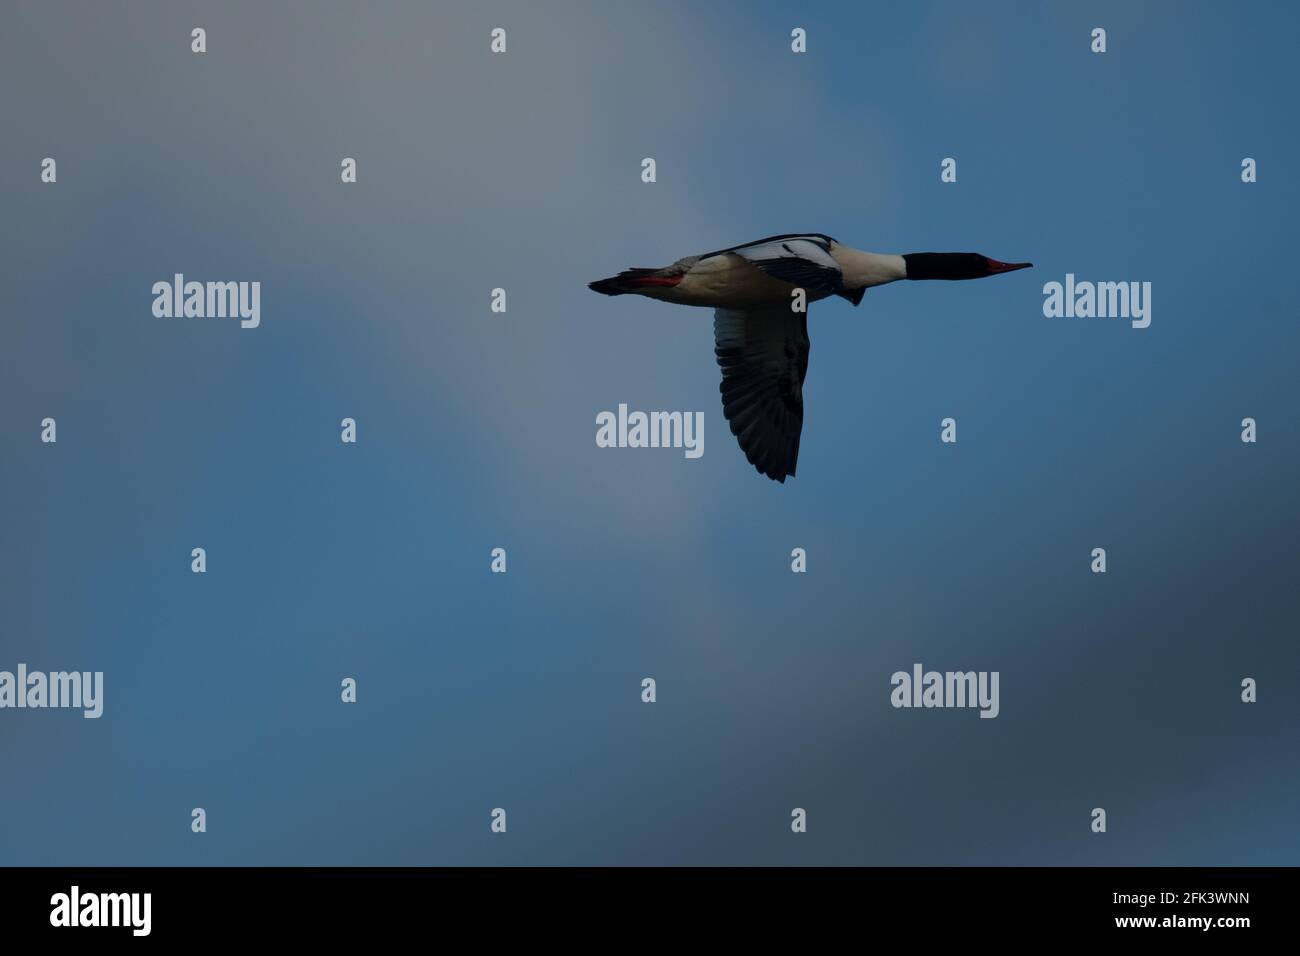 Common Merganser flying through the sky Stock Photo